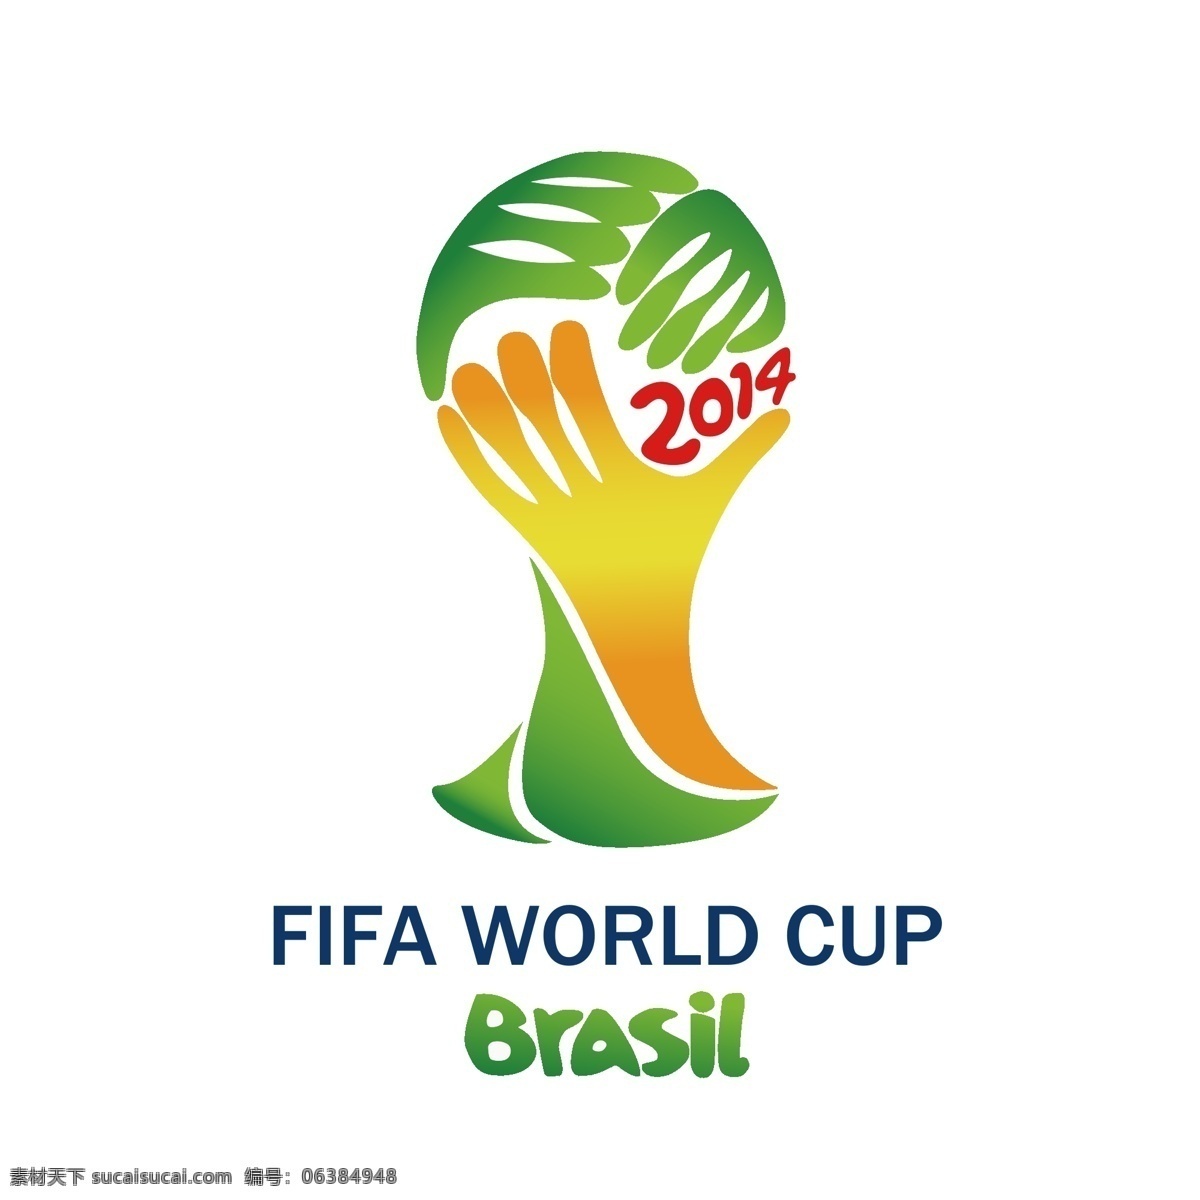 印花 矢量图 巴西 服装图案 人物 世界杯 手 印花矢量图 面料图库 服装设计 图案花型